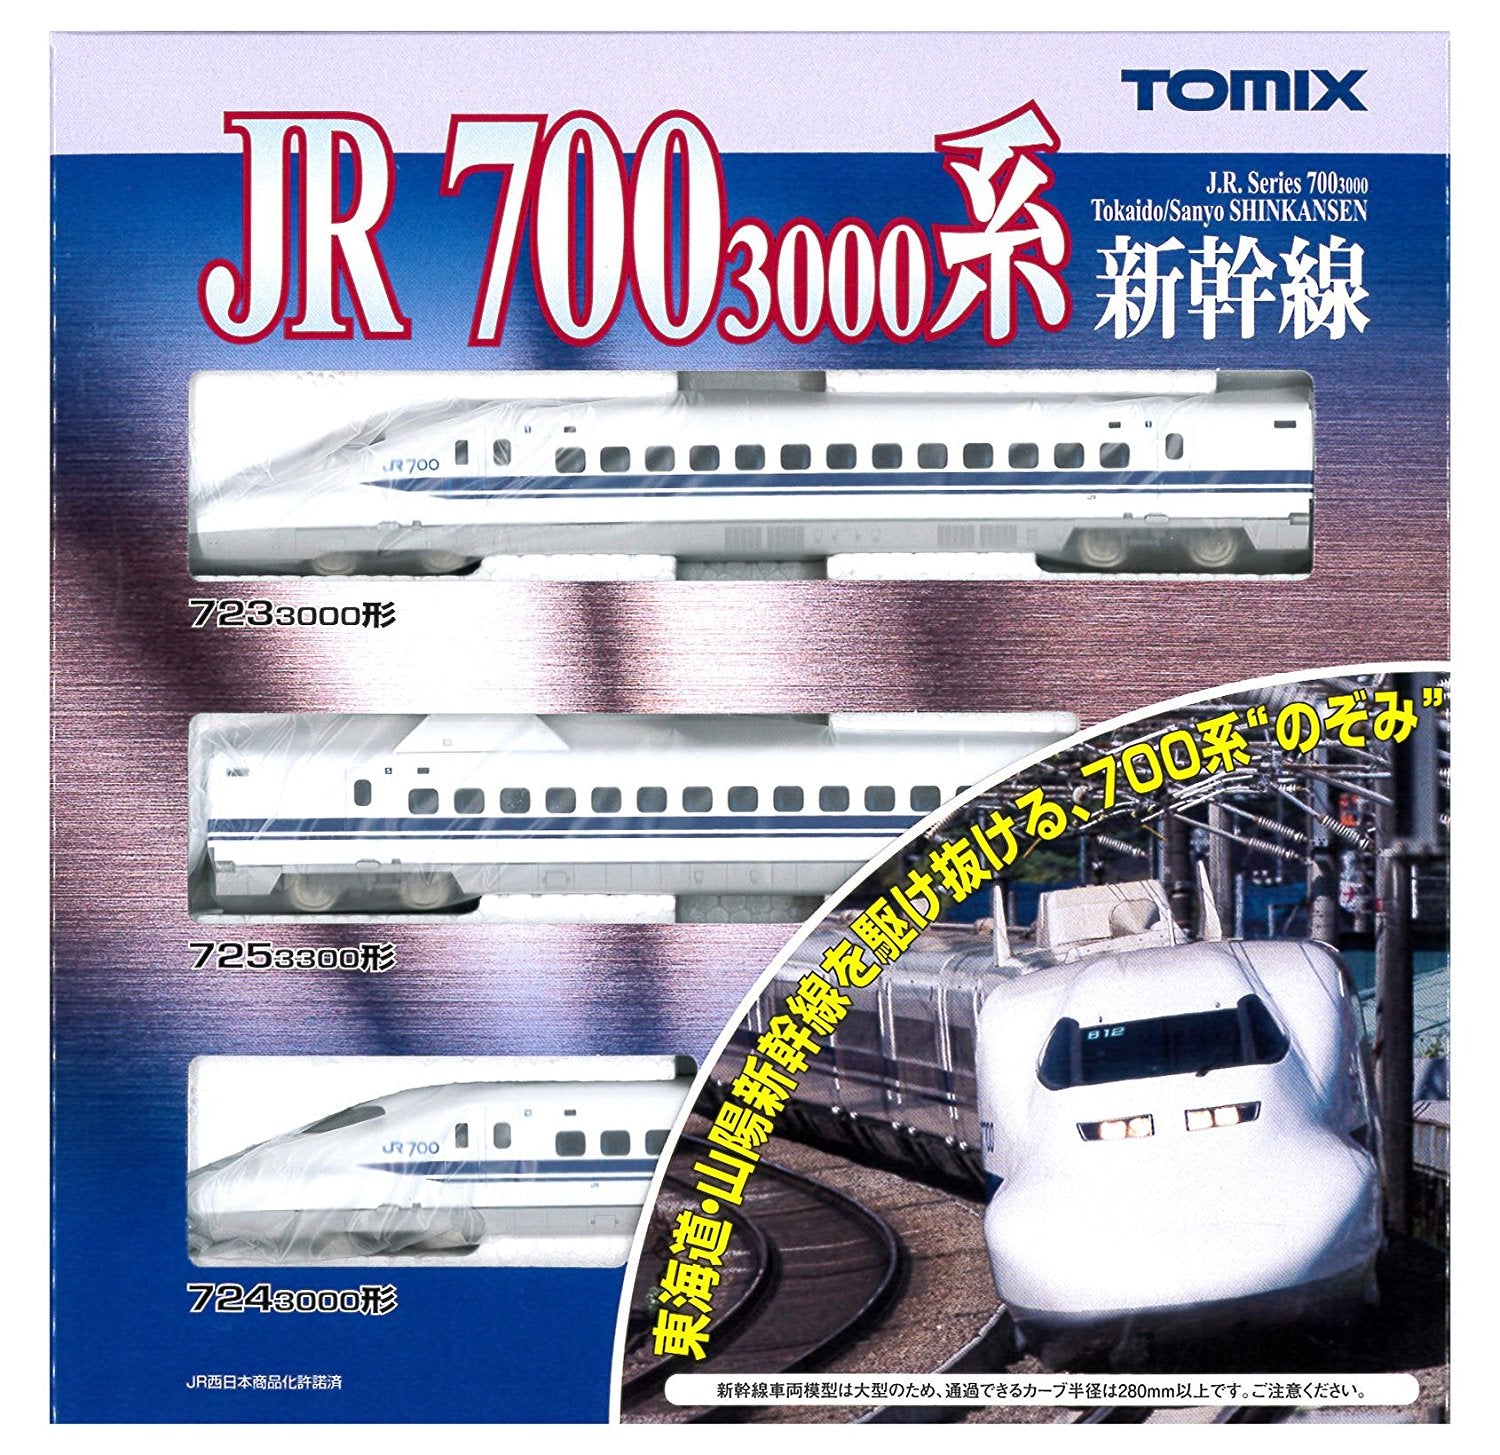 700-3000 Tokaido/Sanyo Shinkansen `Nozomi` (Basic 3-Car Set)